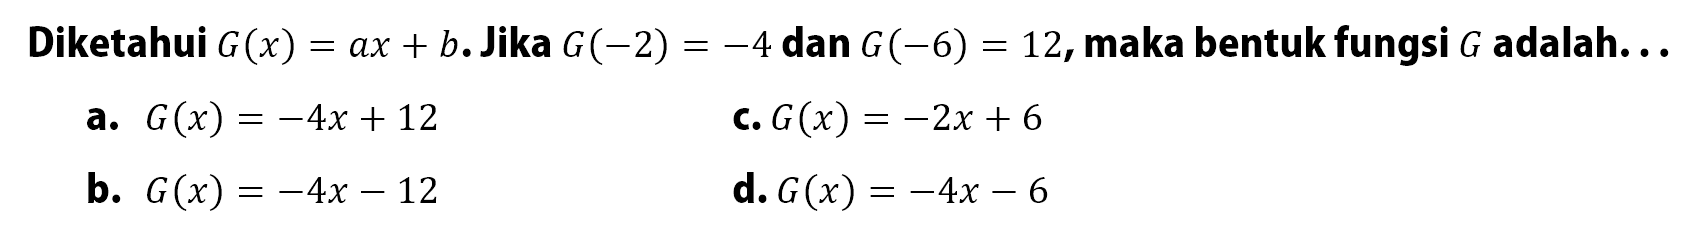 Diketahui G(x) = ax + b. Jika G(-2) = -4 dan G(-6) = 12, maka bentuk fungsi G adalah... a. G(x) = -4x + 12 c. G(x) = -2x + 6 b. G(x) = -4x - 12 d. G(x) = -4x - 6